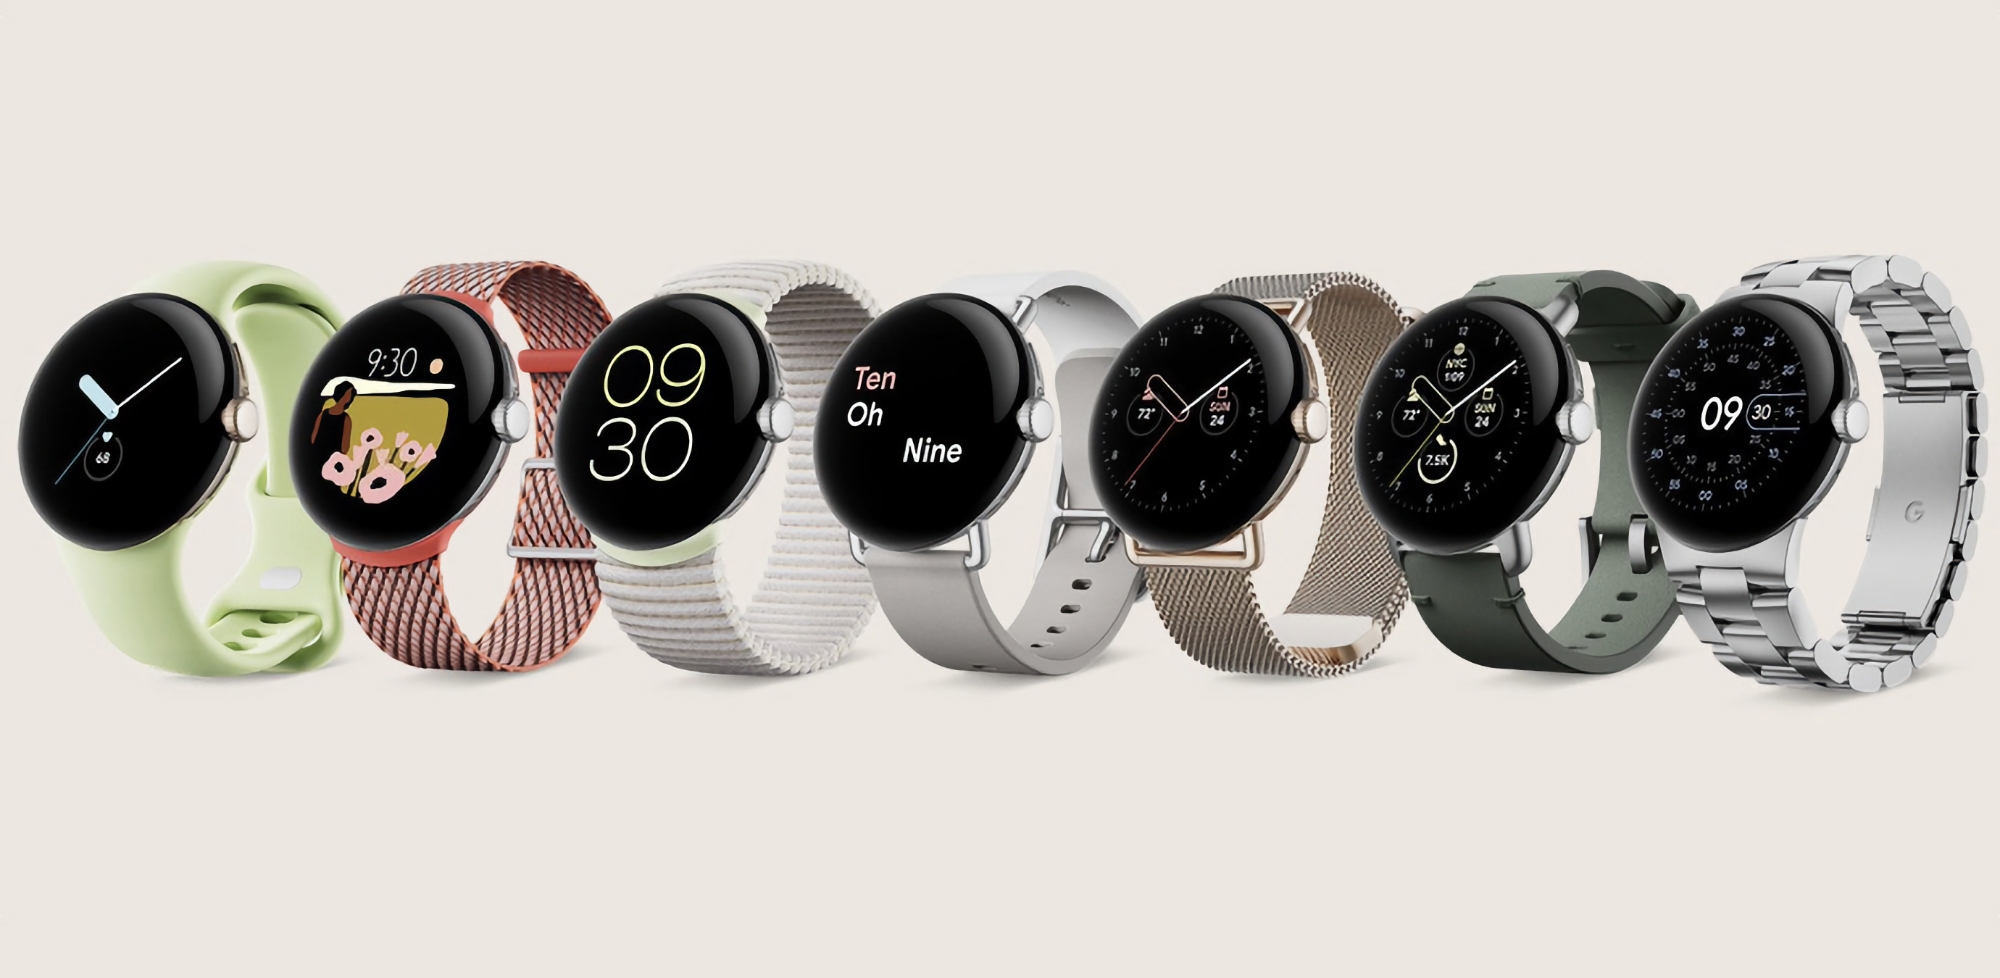 La Google Pixel Watch originale bénéficie de nouvelles fonctionnalités grâce à la mise à jour logicielle.